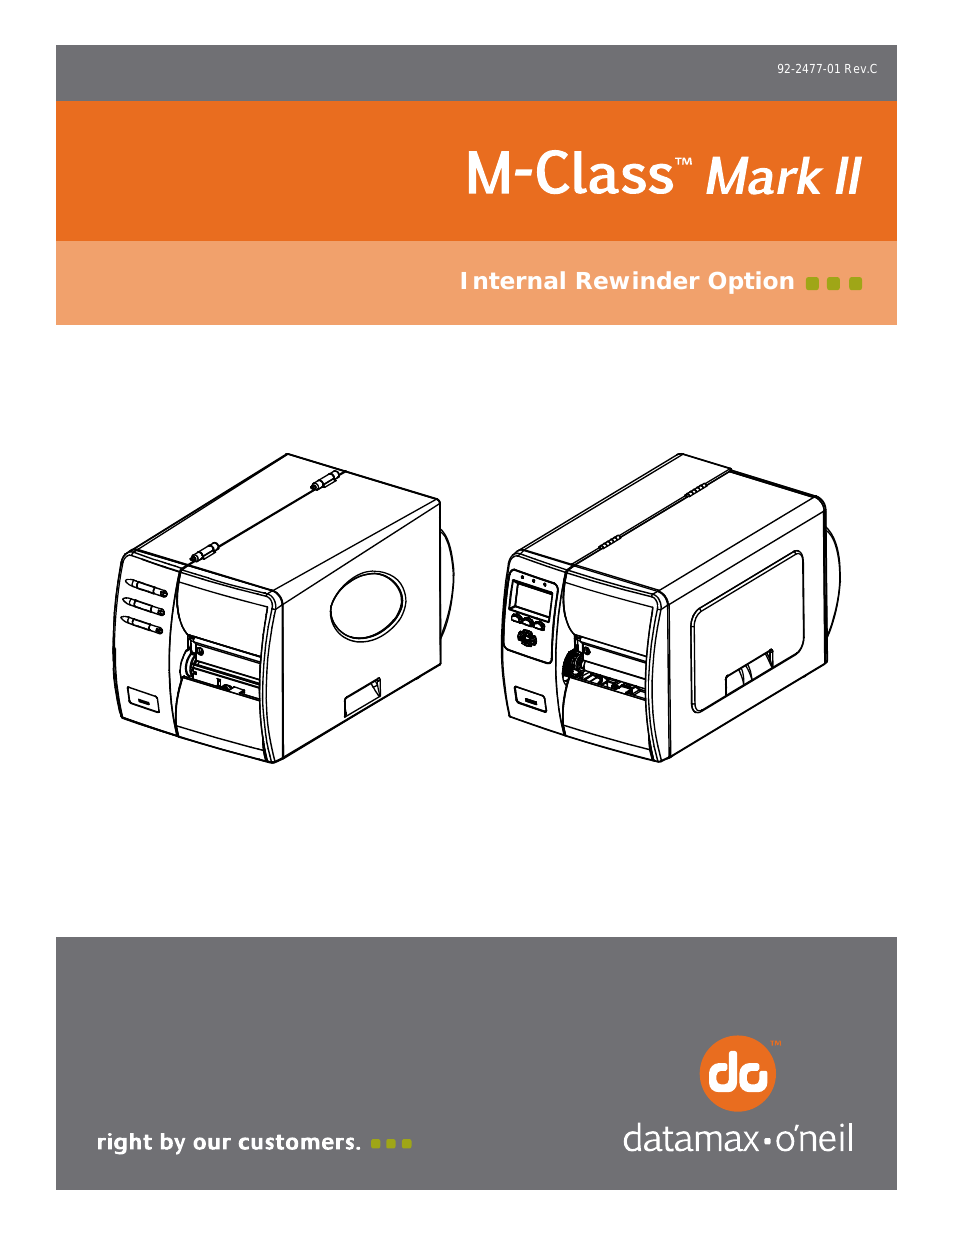 M-Class Mark II Internal Rewinder Option